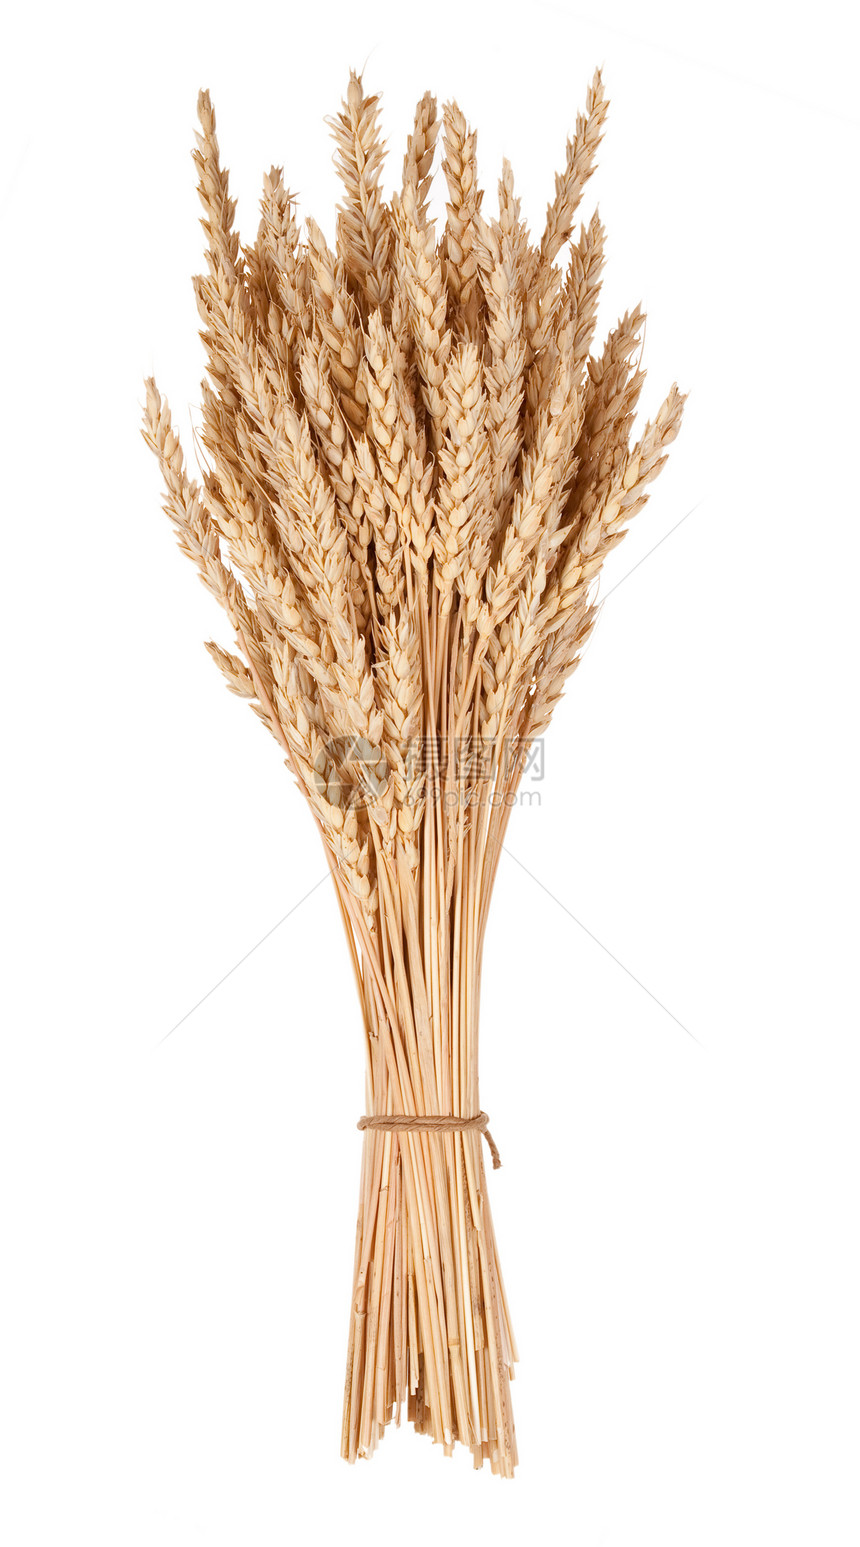 小麦草面包耳朵稻草收获核心粮食植物面粉生长栽培图片